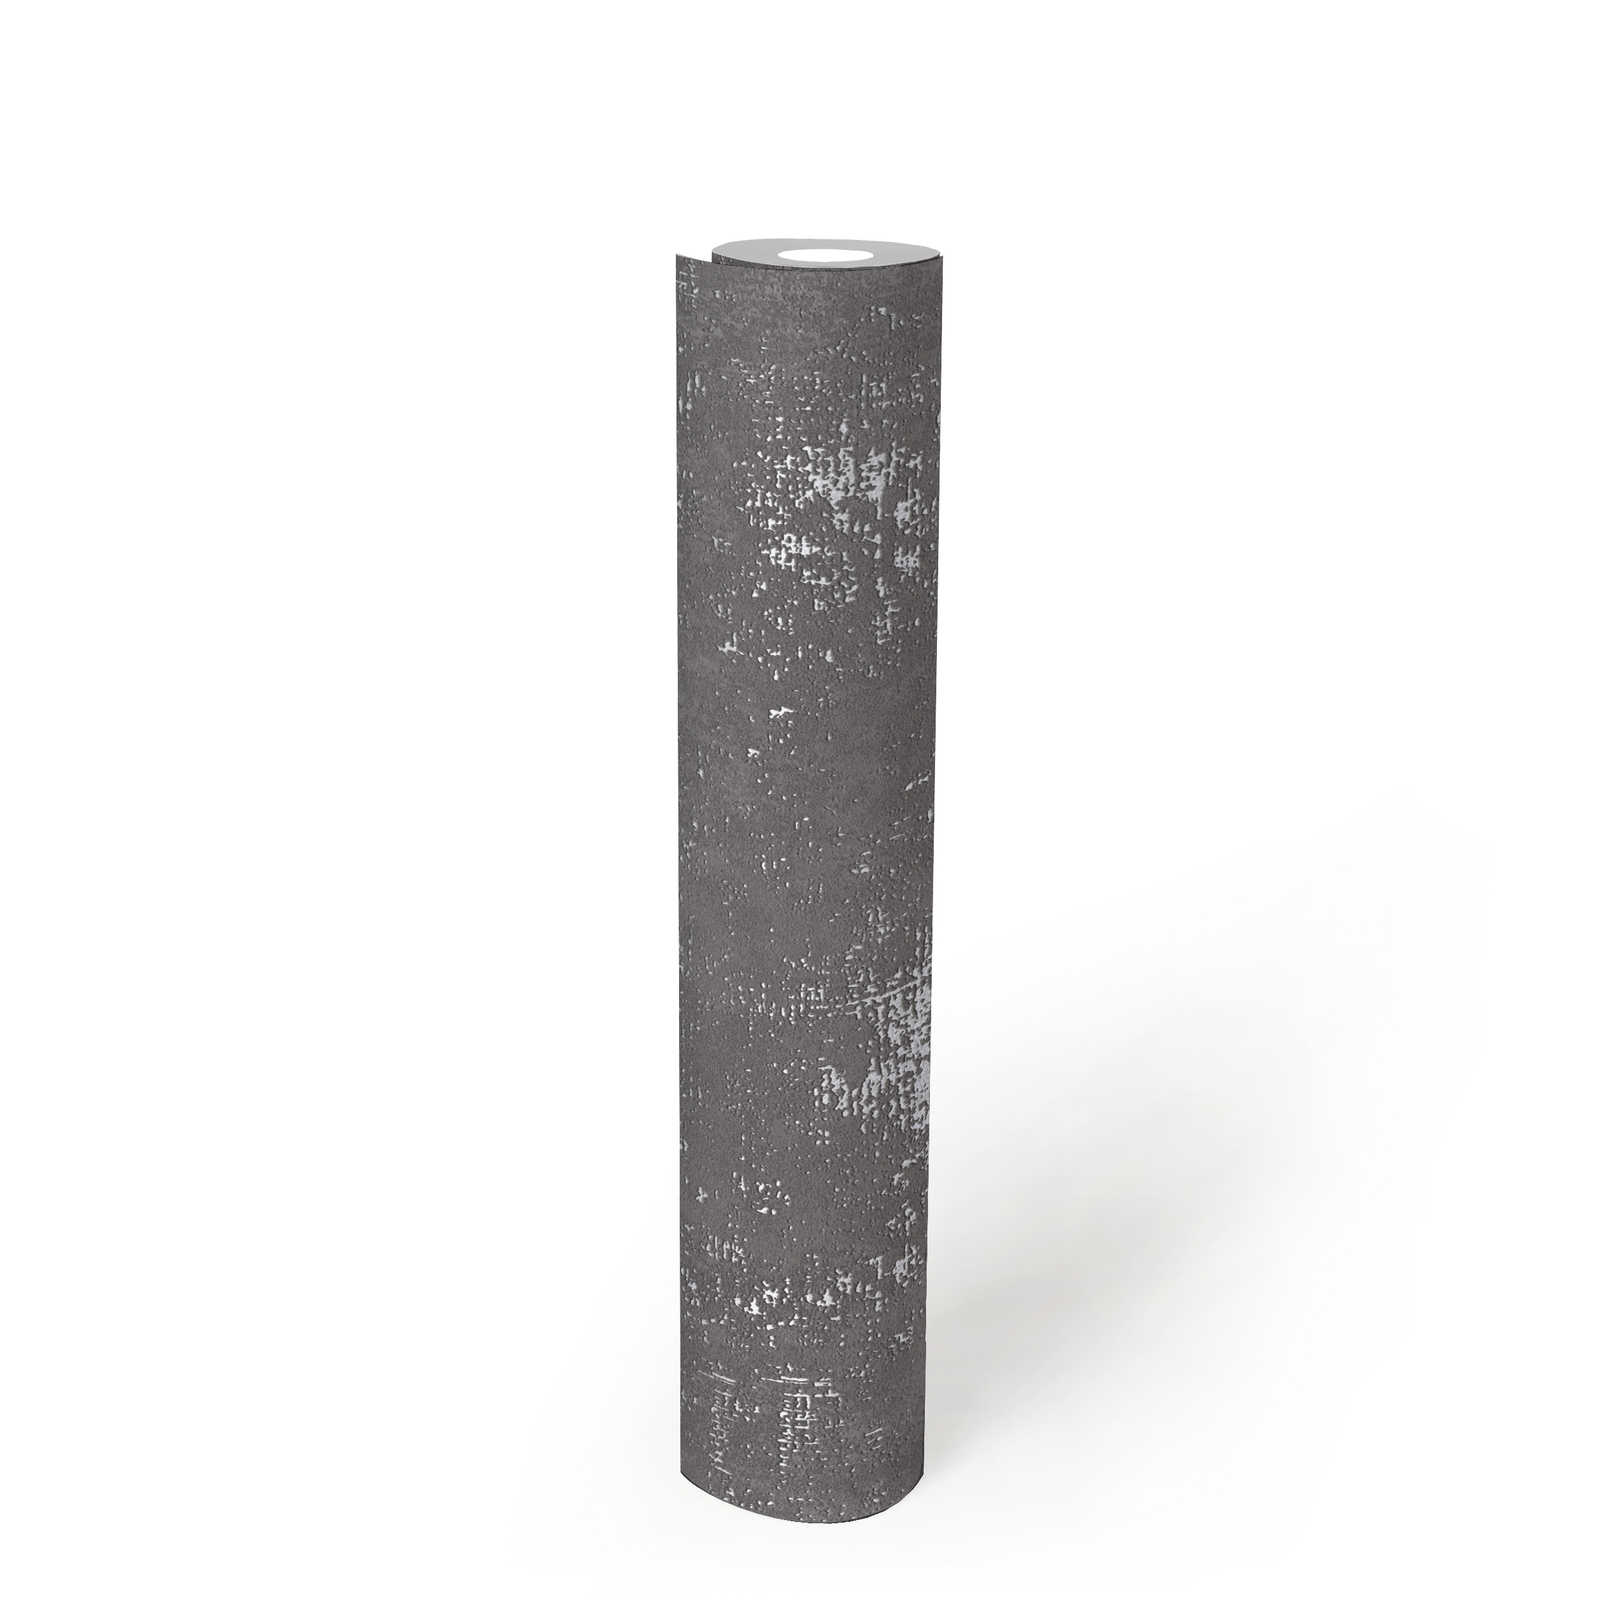             Papier peint gris foncé imitation crépi avec structure métallique
        